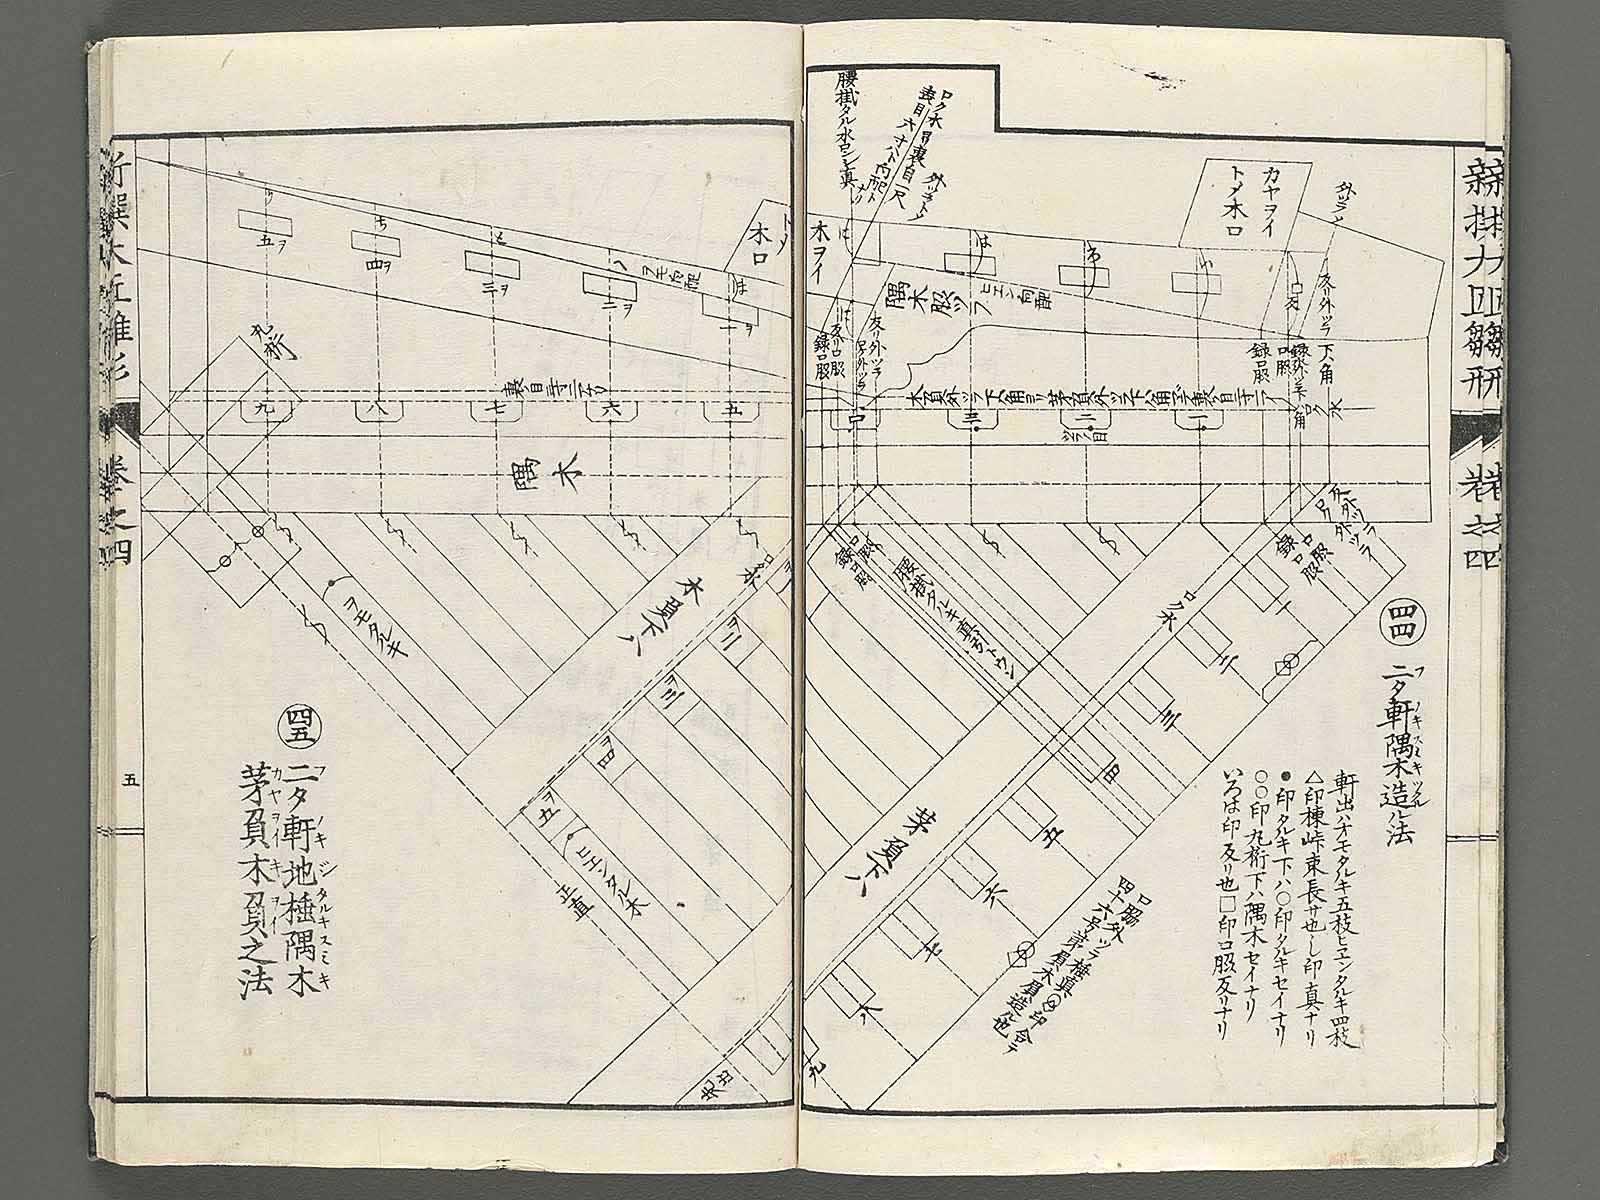 Shinsen taisho hinagata taizen Vol.4 / BJ251-860 – NIHONKOSHO